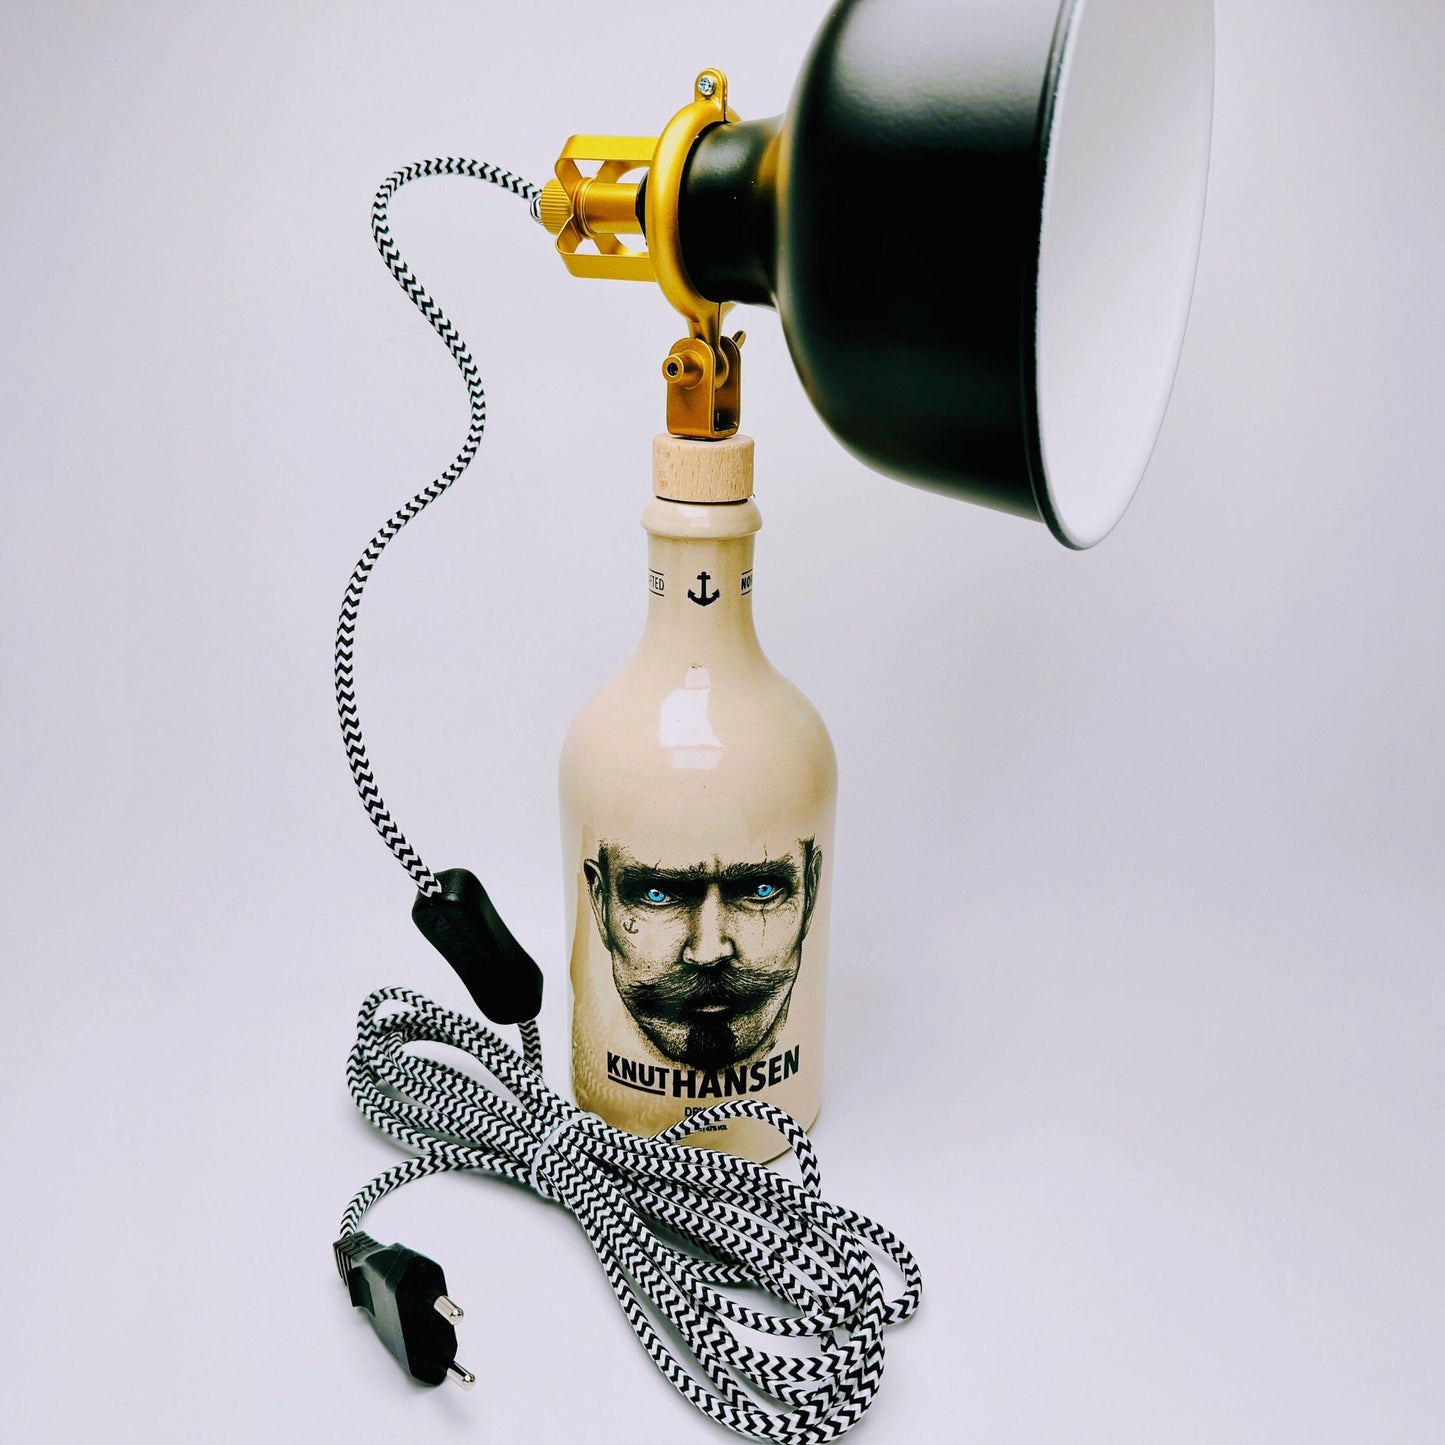 Knut Hansen Gin Vintage-Lampe | Handgemachte nachhaltige Tischlampe aus Knut Hansen Gin | Einzigartige Geschenkidee | Deko-Licht | Upcycling